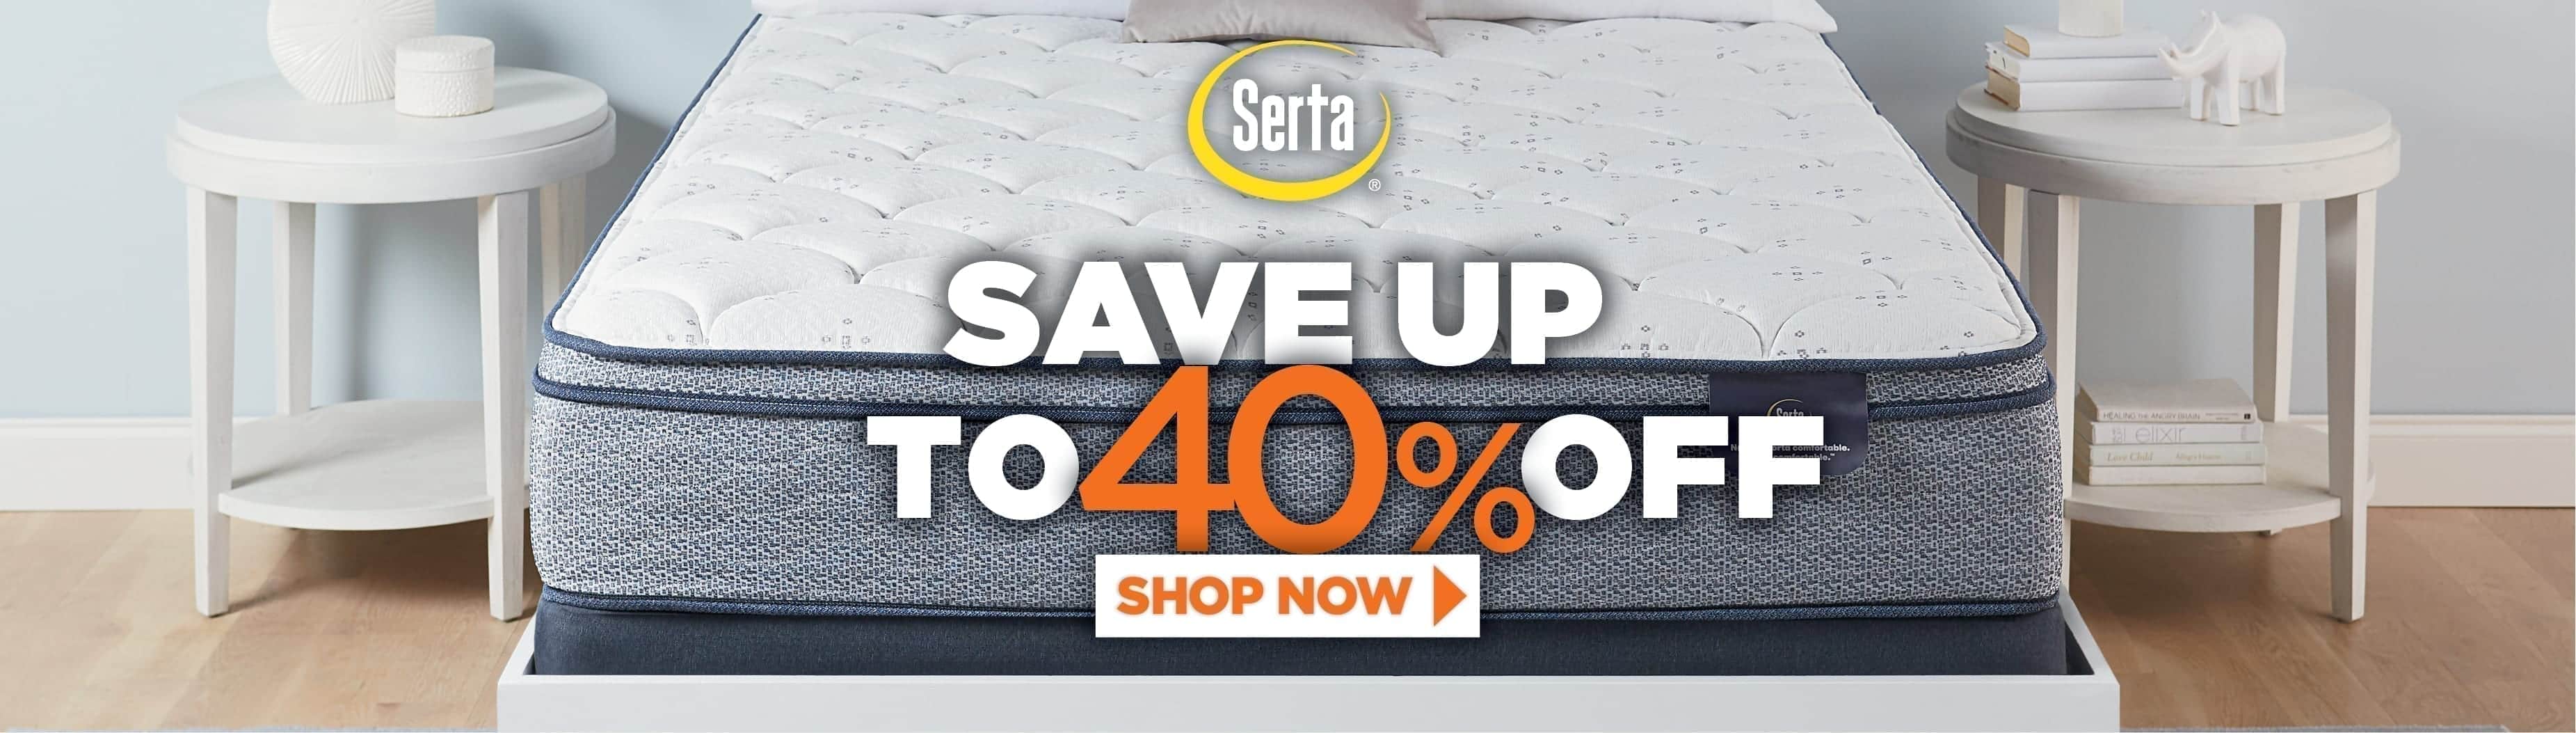 Serta mattress sale